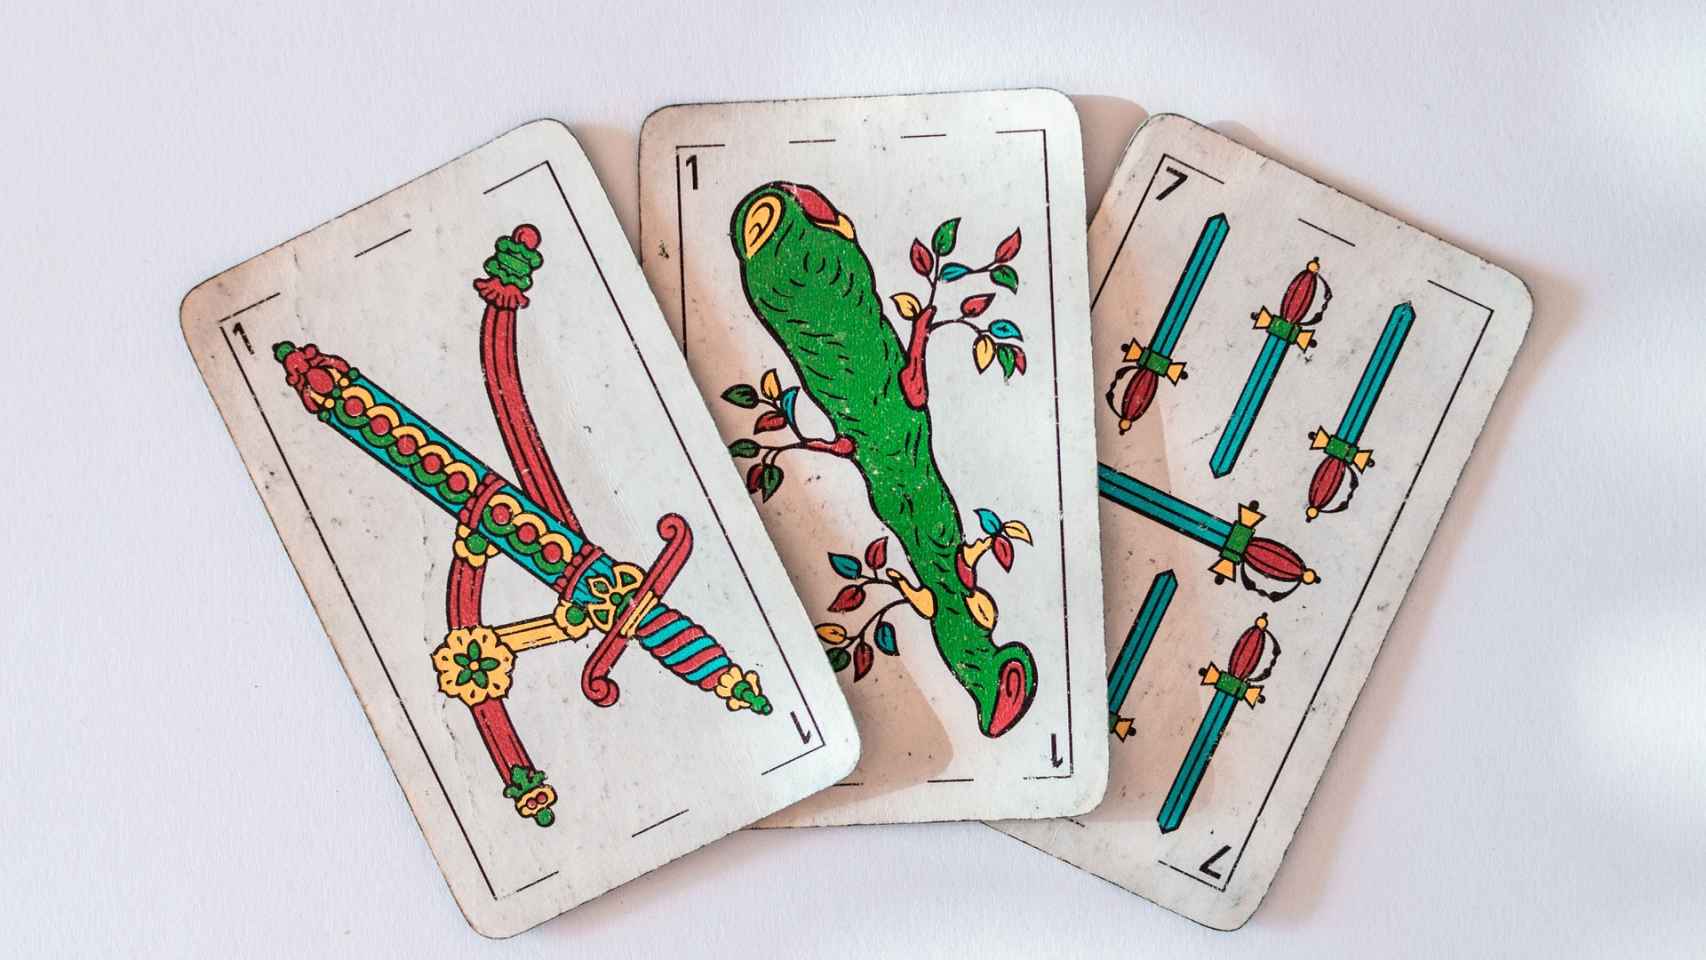 Los juegos de cartas españolas